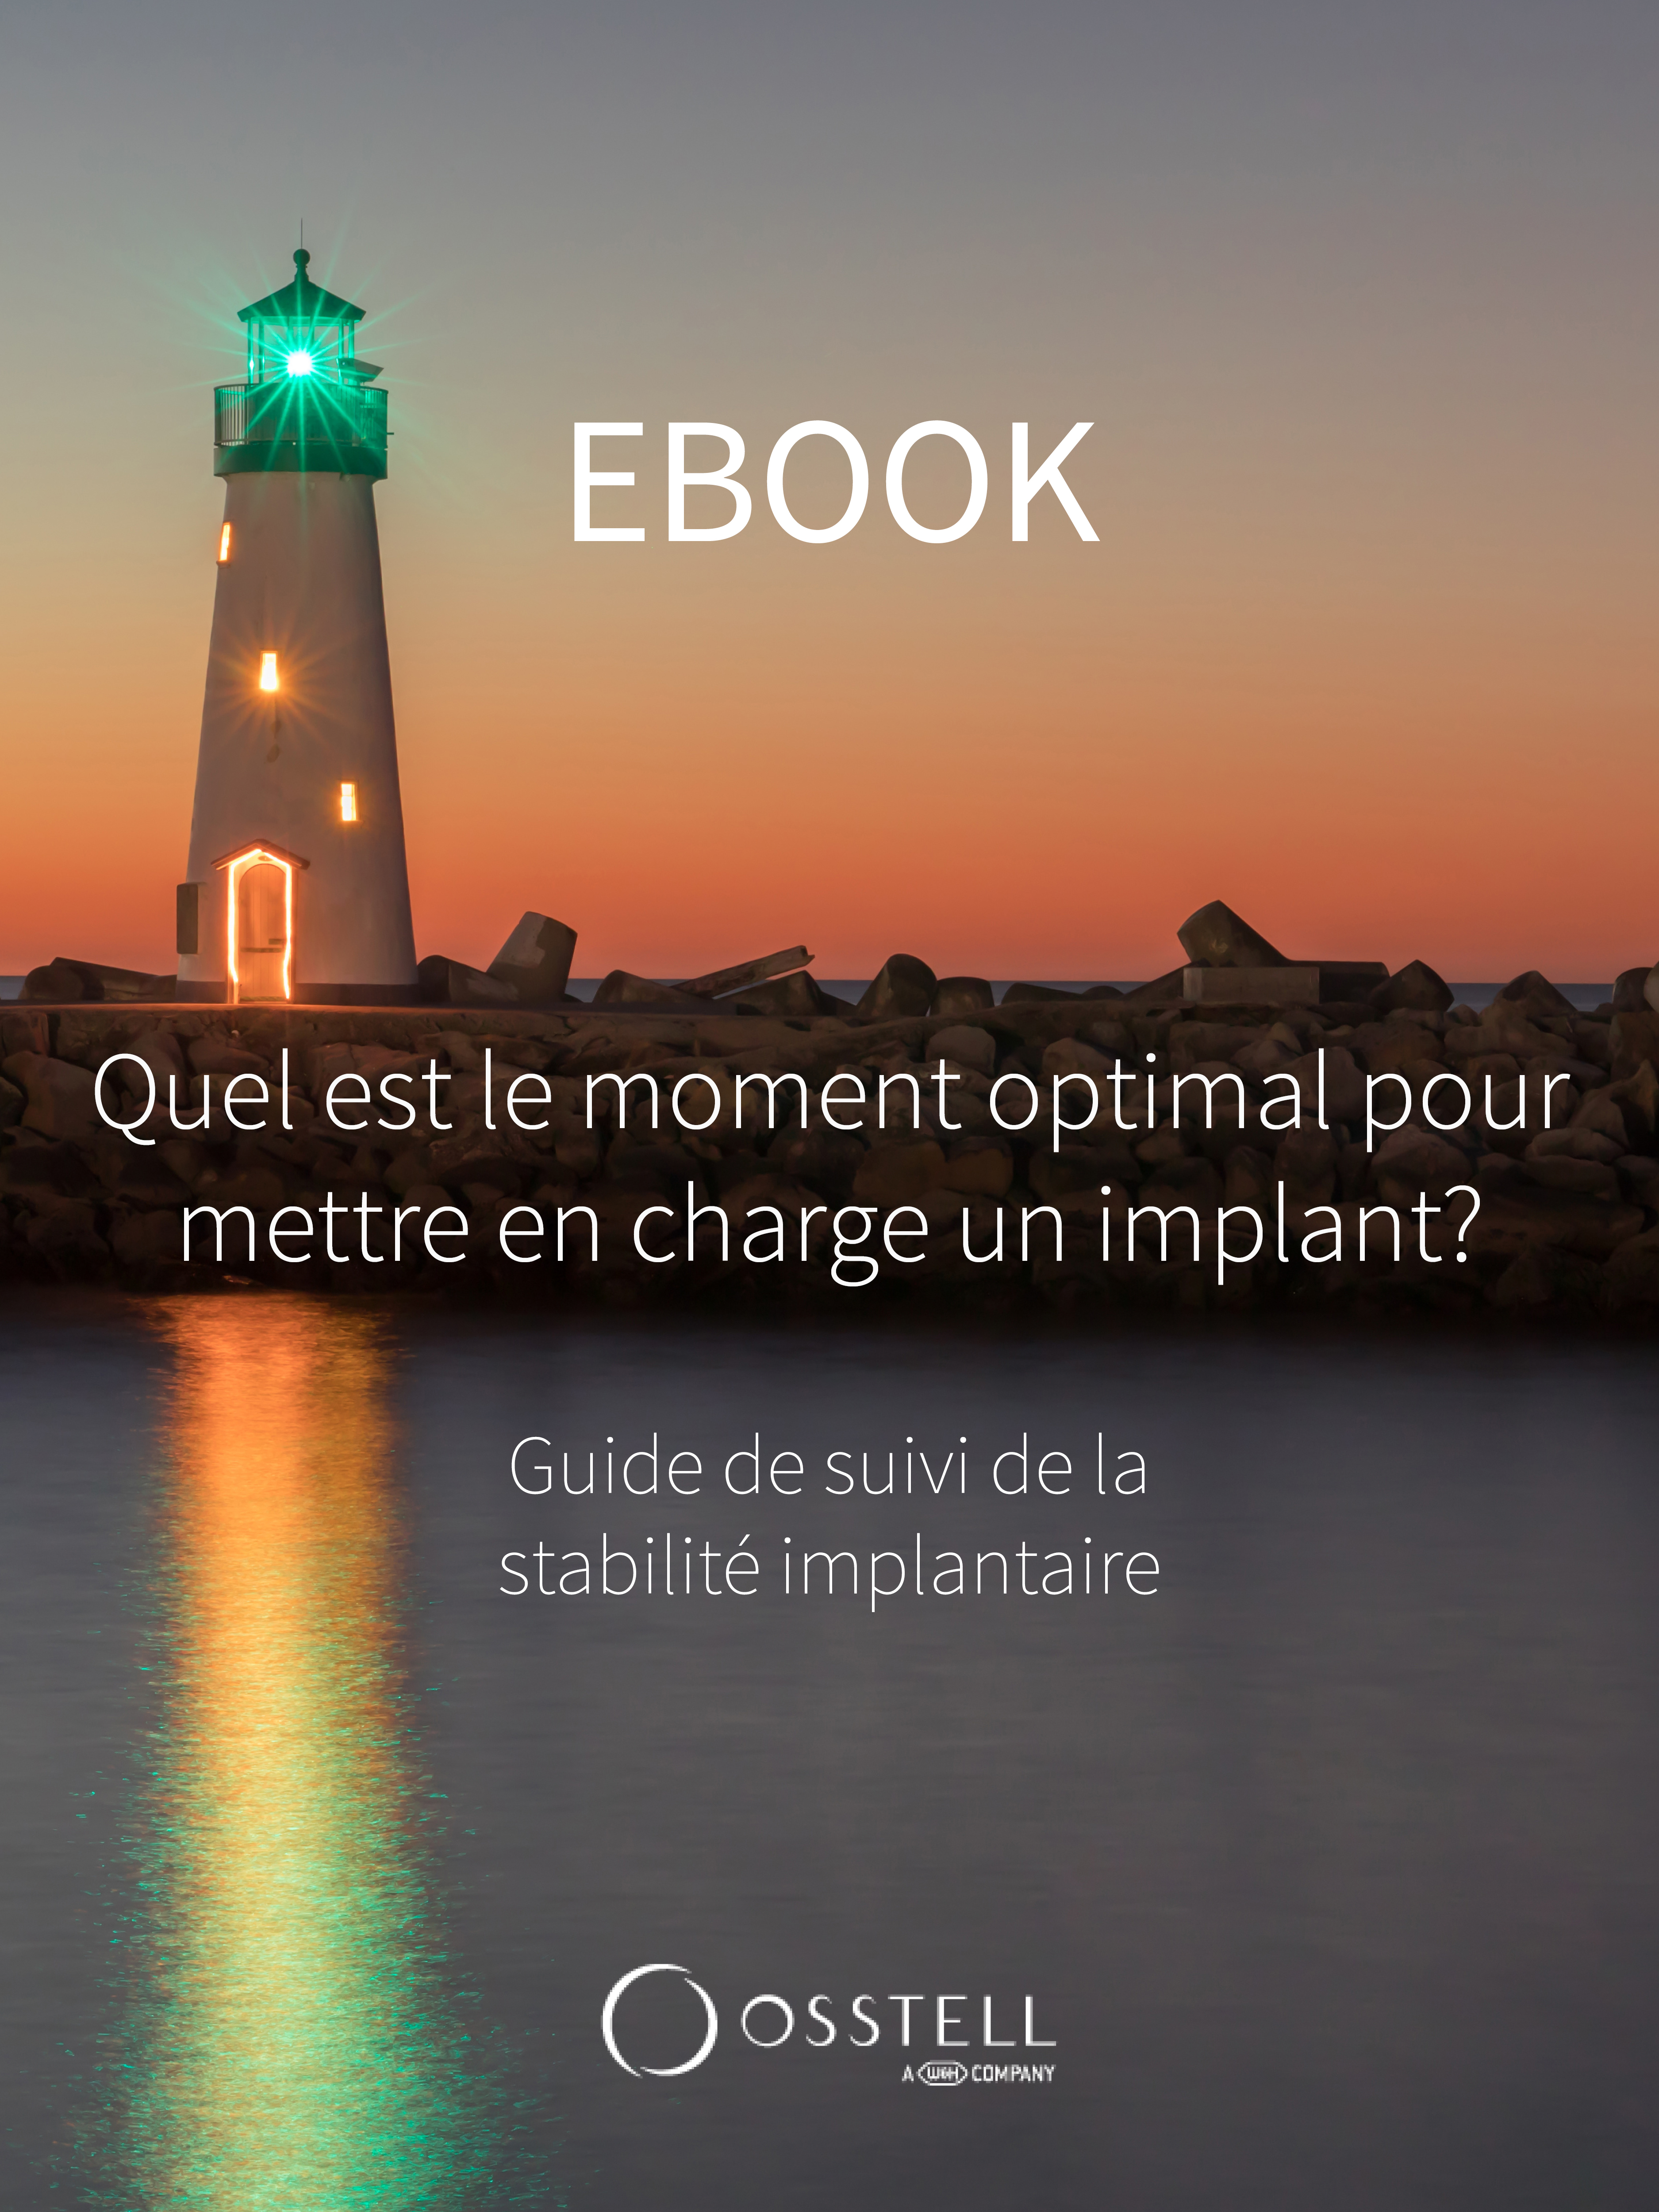 Ebook French Guide de la Stabilité Implantaire